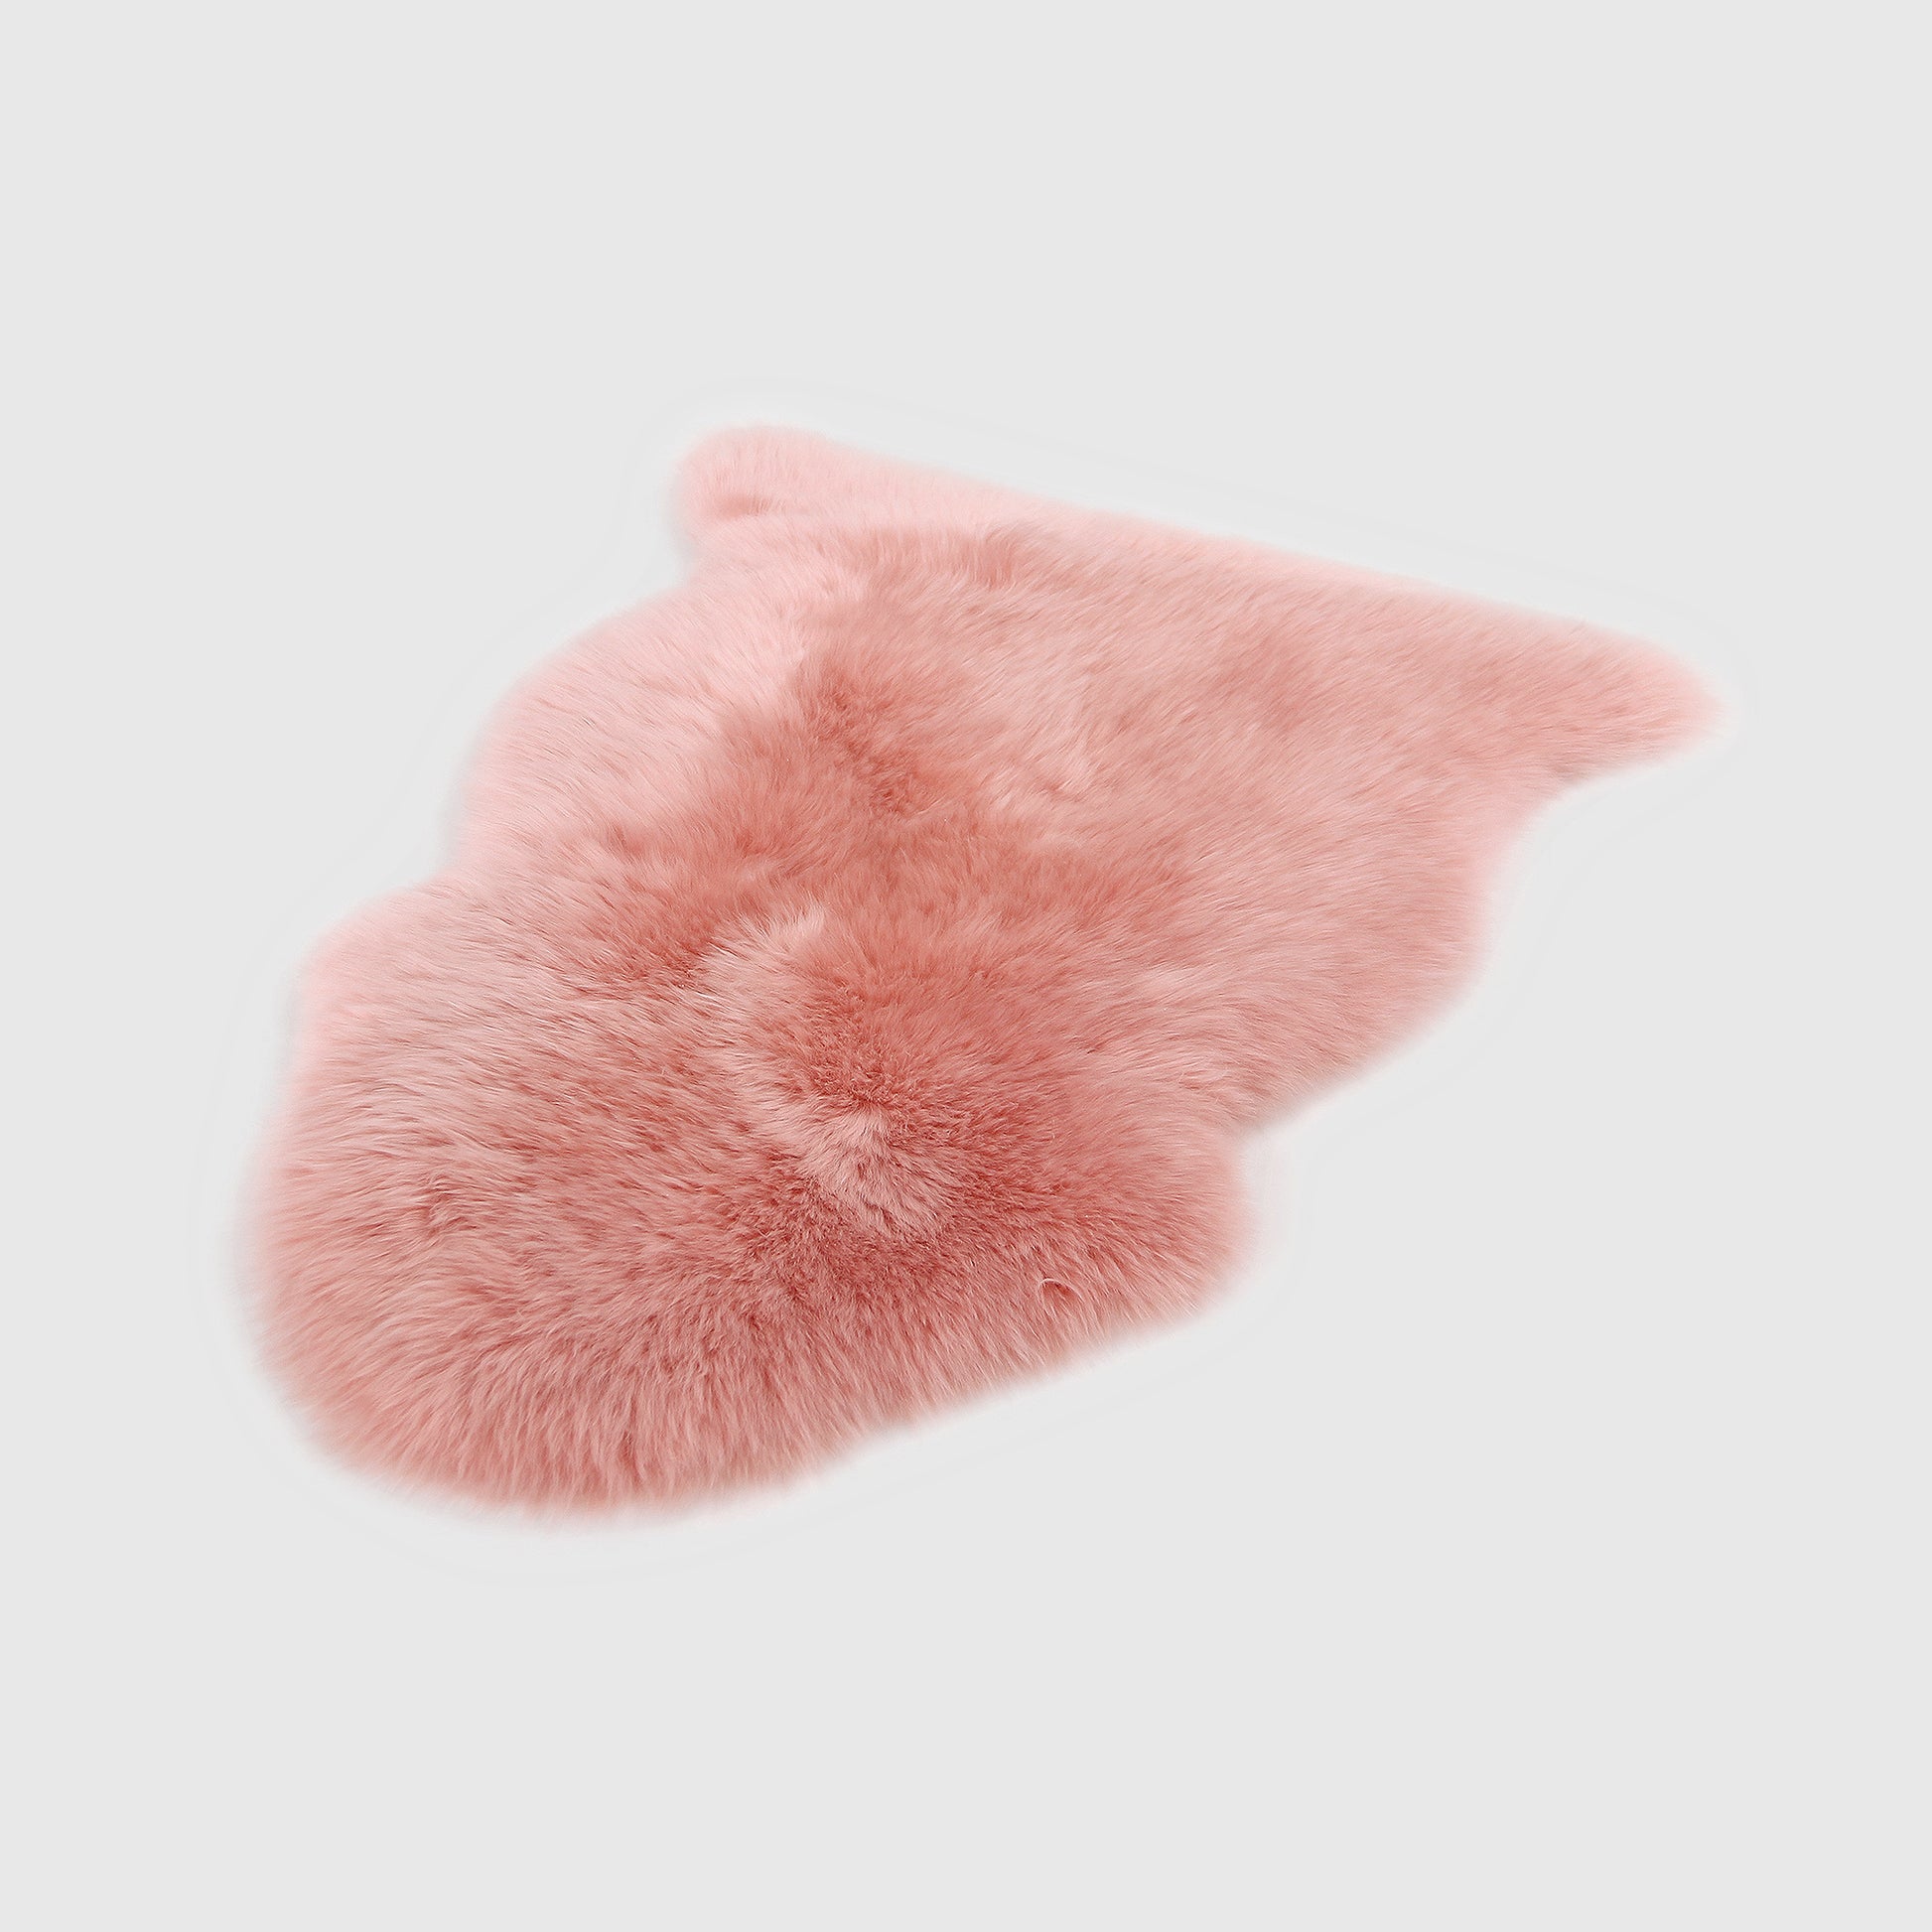 The Mood | Charlie Sheepskin Single Pelt Rug, Flamingo Pink